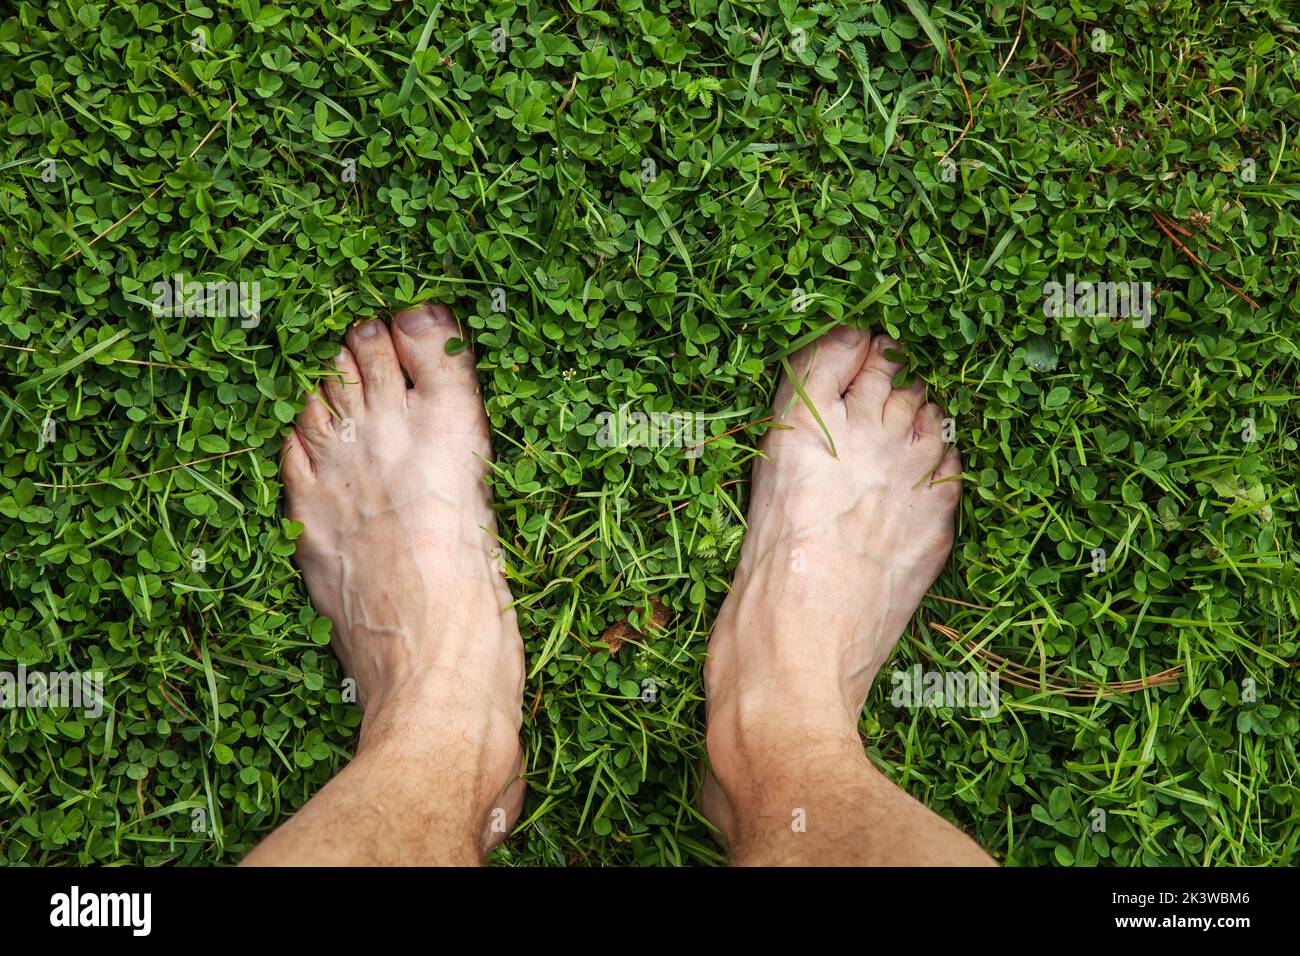 Los pies descalzos de un hombre de pie sobre una hierba verde de un césped, vista superior Foto de stock